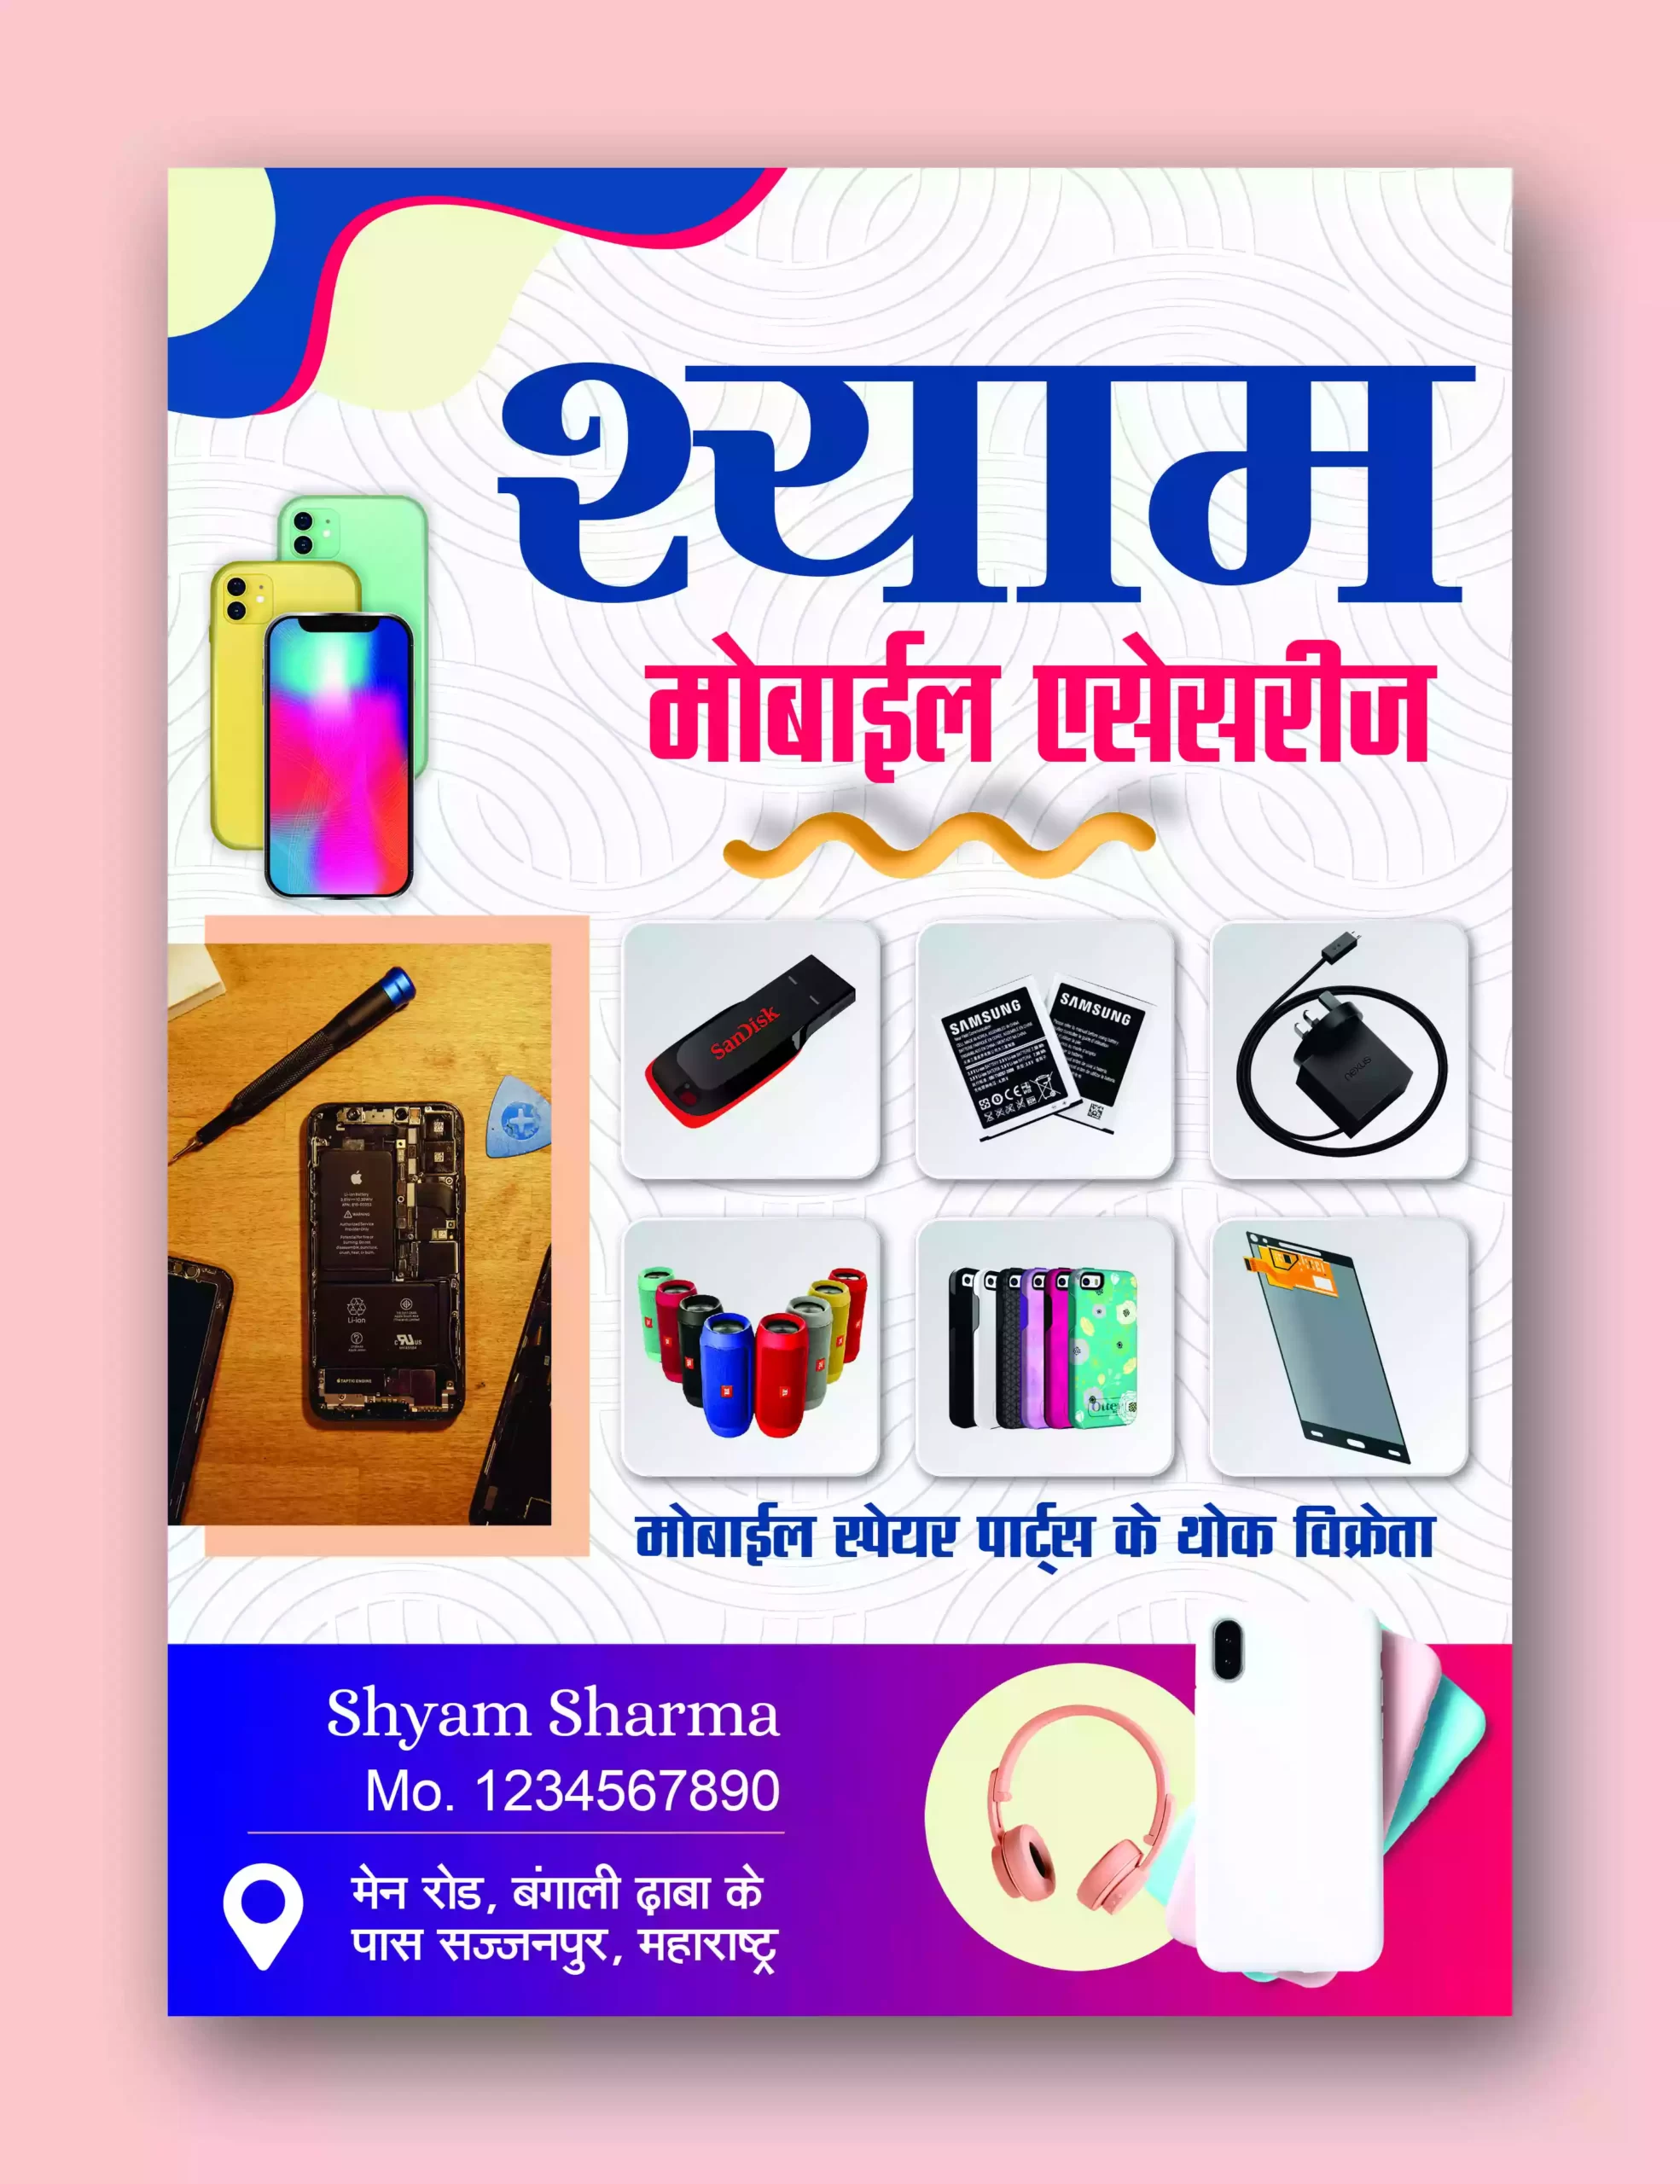 Mobile repairing shop Phamplet in Hindi 100422